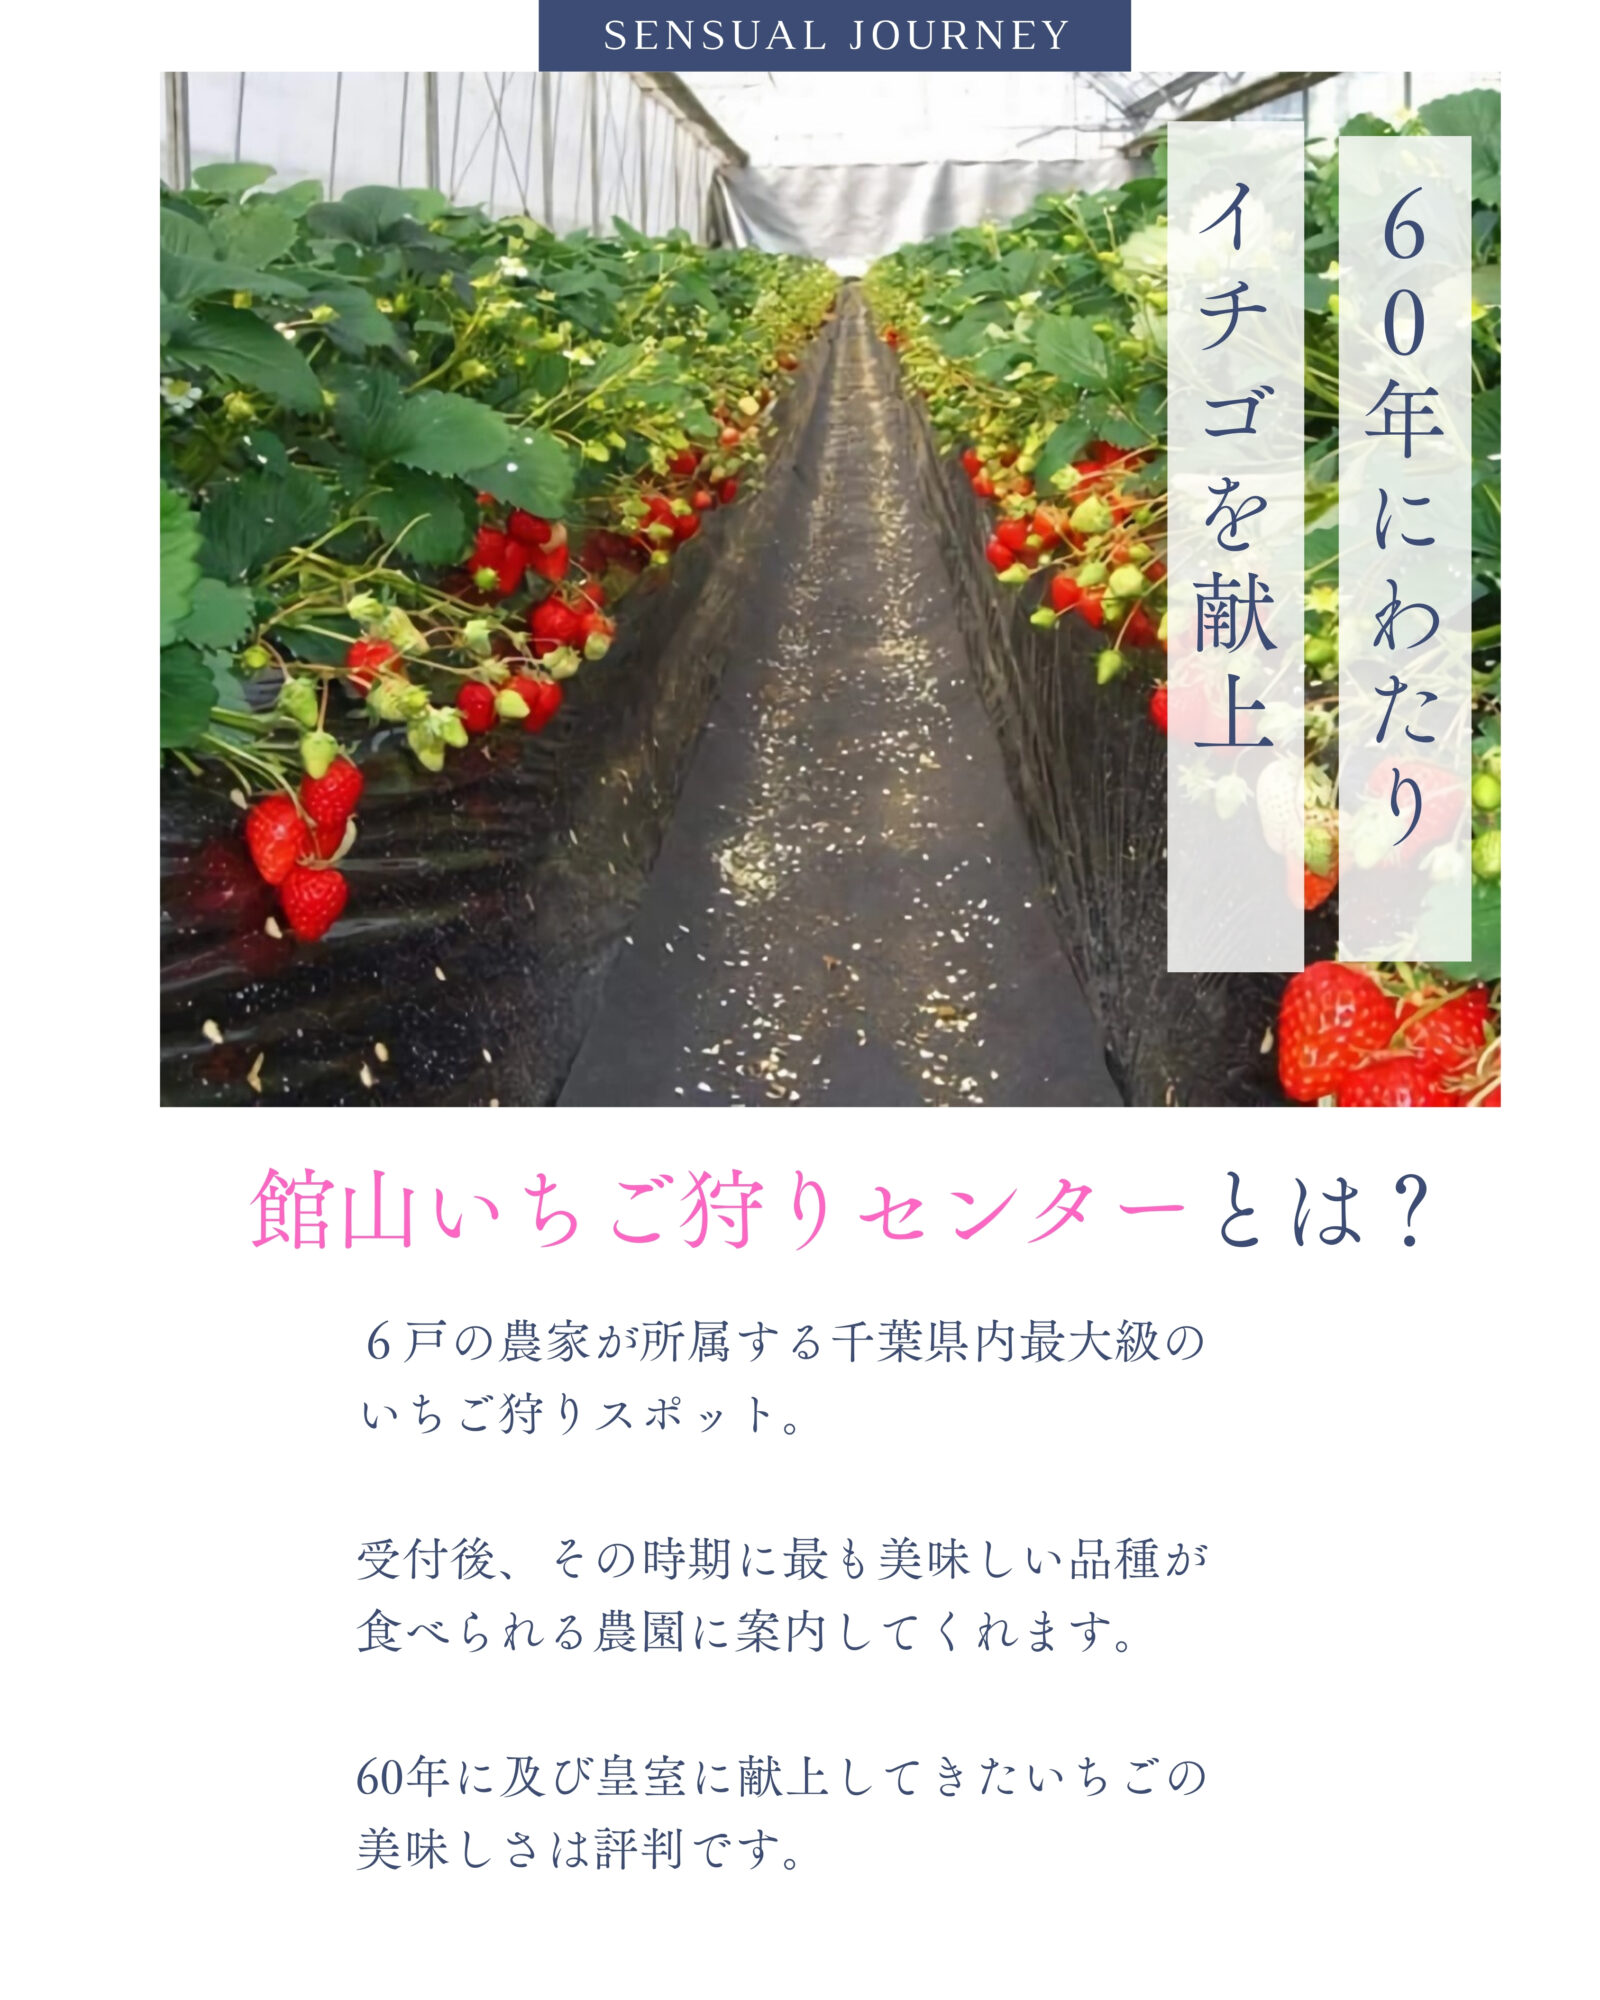 【子供とおでかけ雑学】千葉県内で最大級のイチゴ狩りスポットは？／1月17日／献上イチゴを扱う「館山いちご狩りセンター」へ行こう！